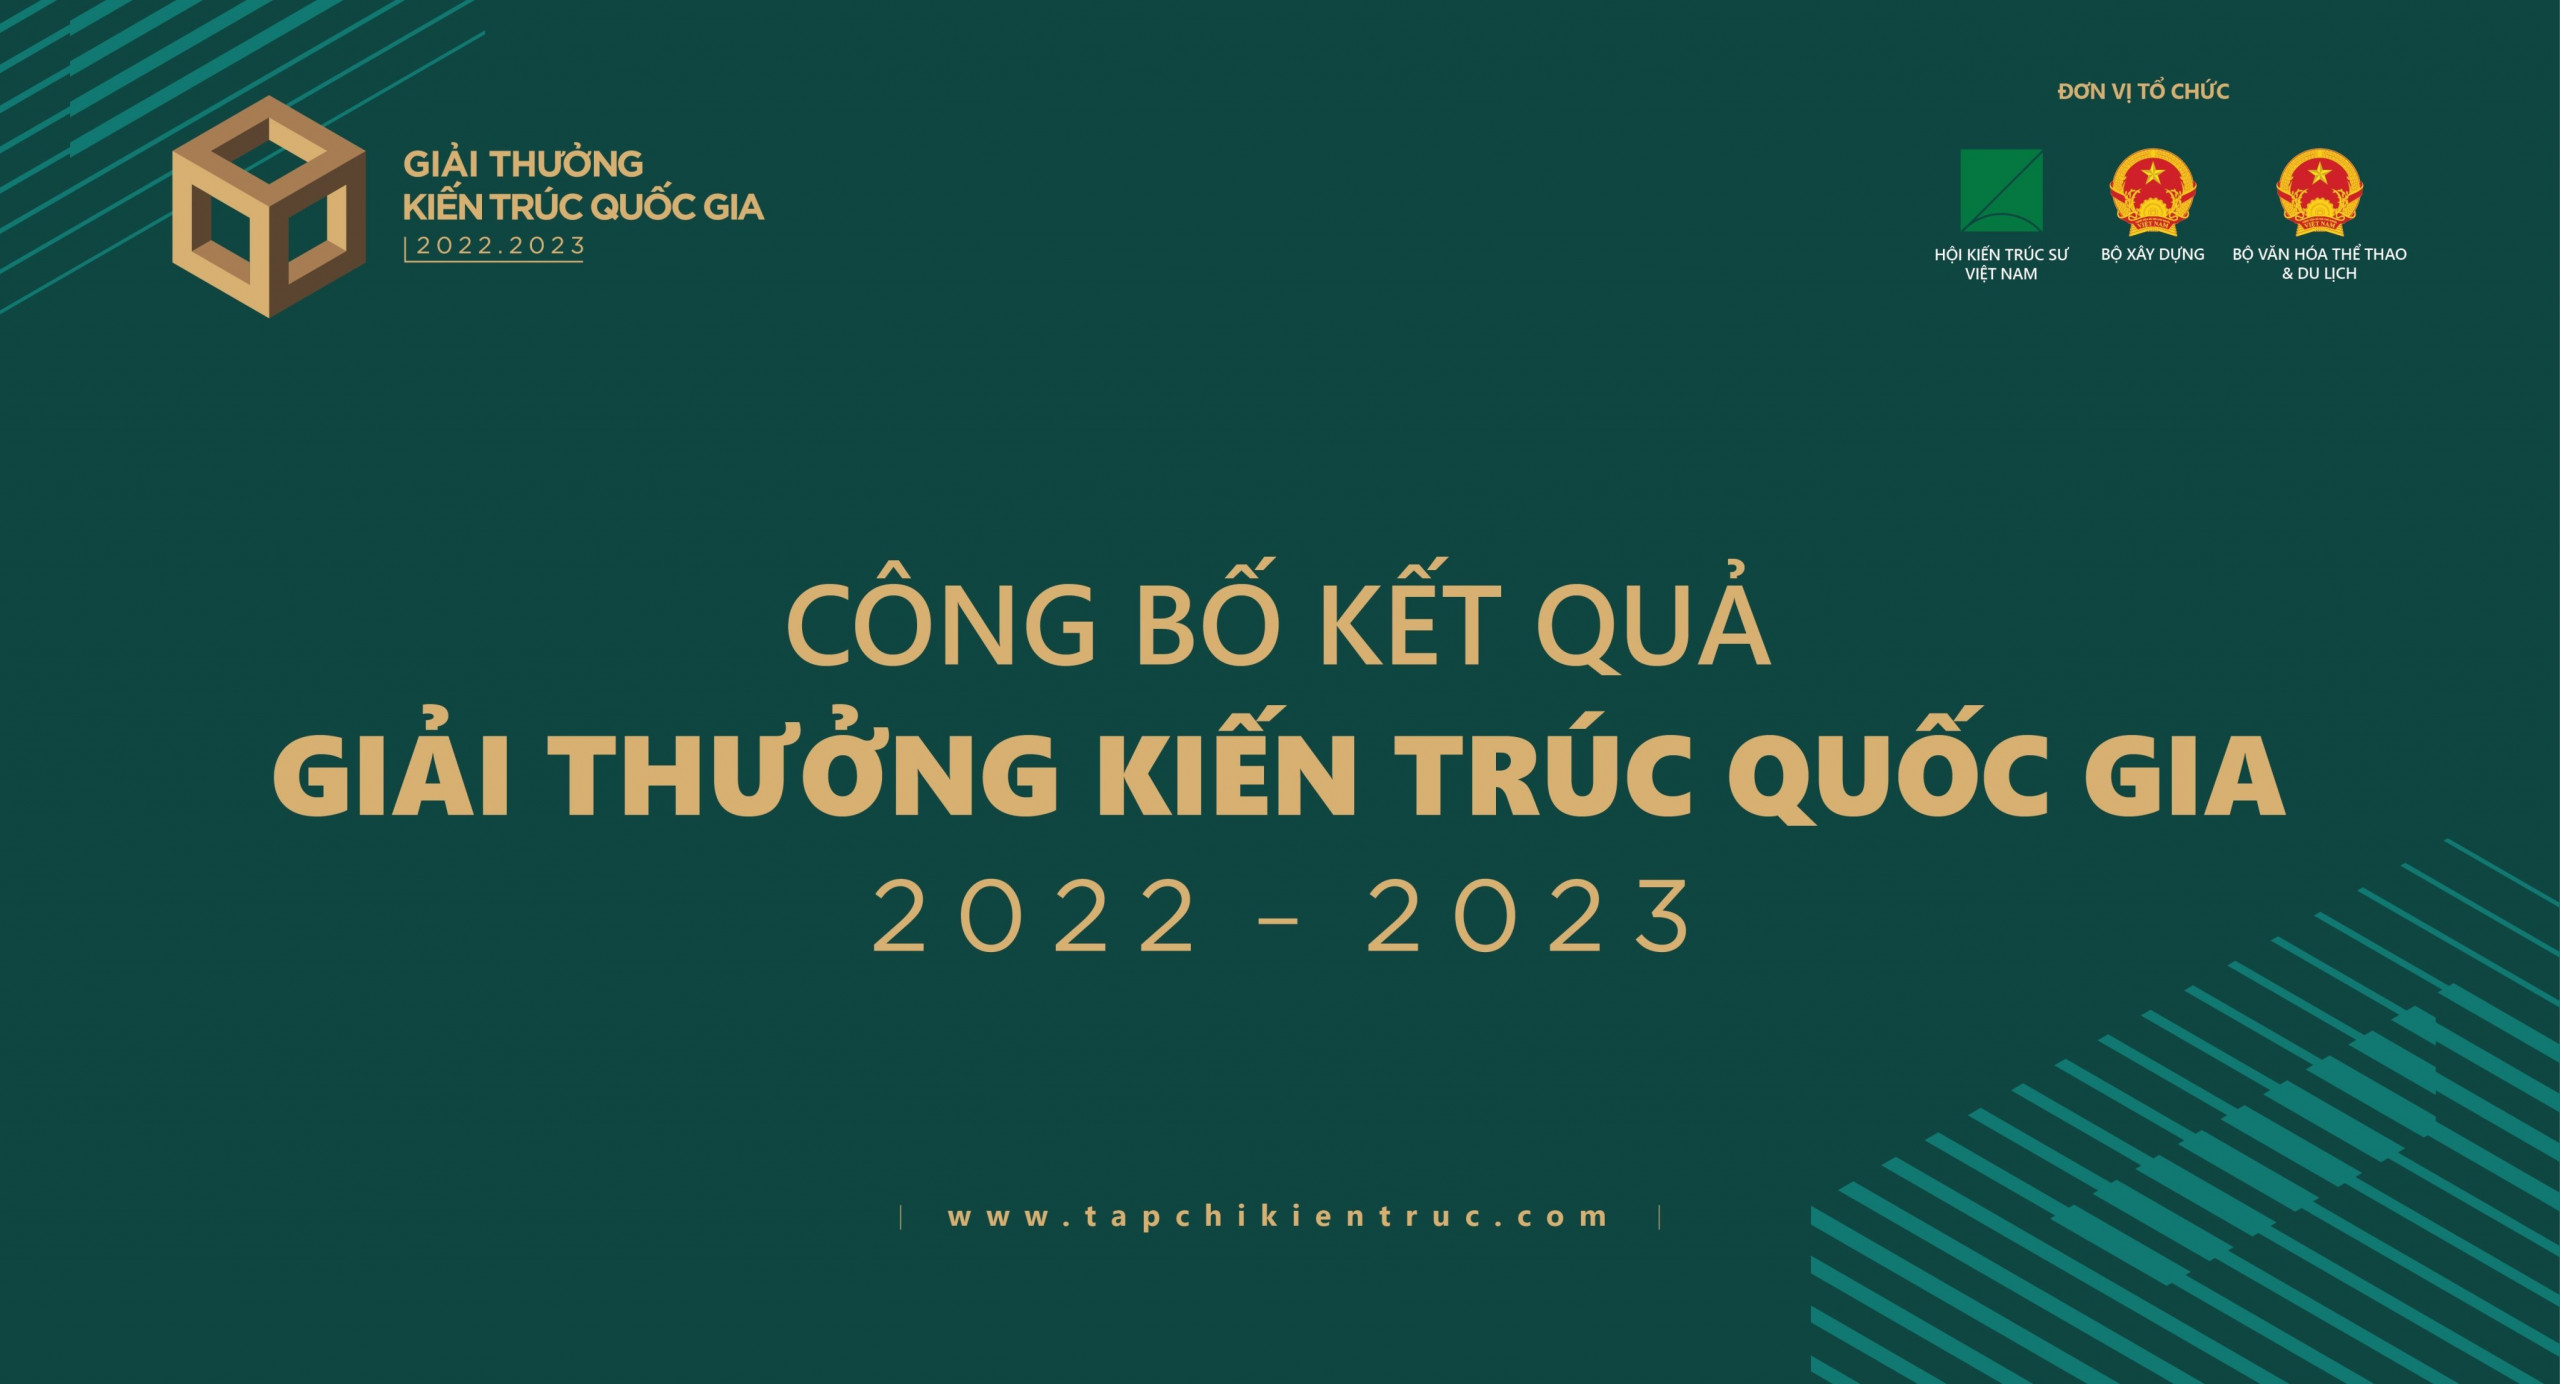 KẾT QUẢ GIẢI THƯỞNG KIẾN TRÚC QUỐC GIA 2022 - 2023